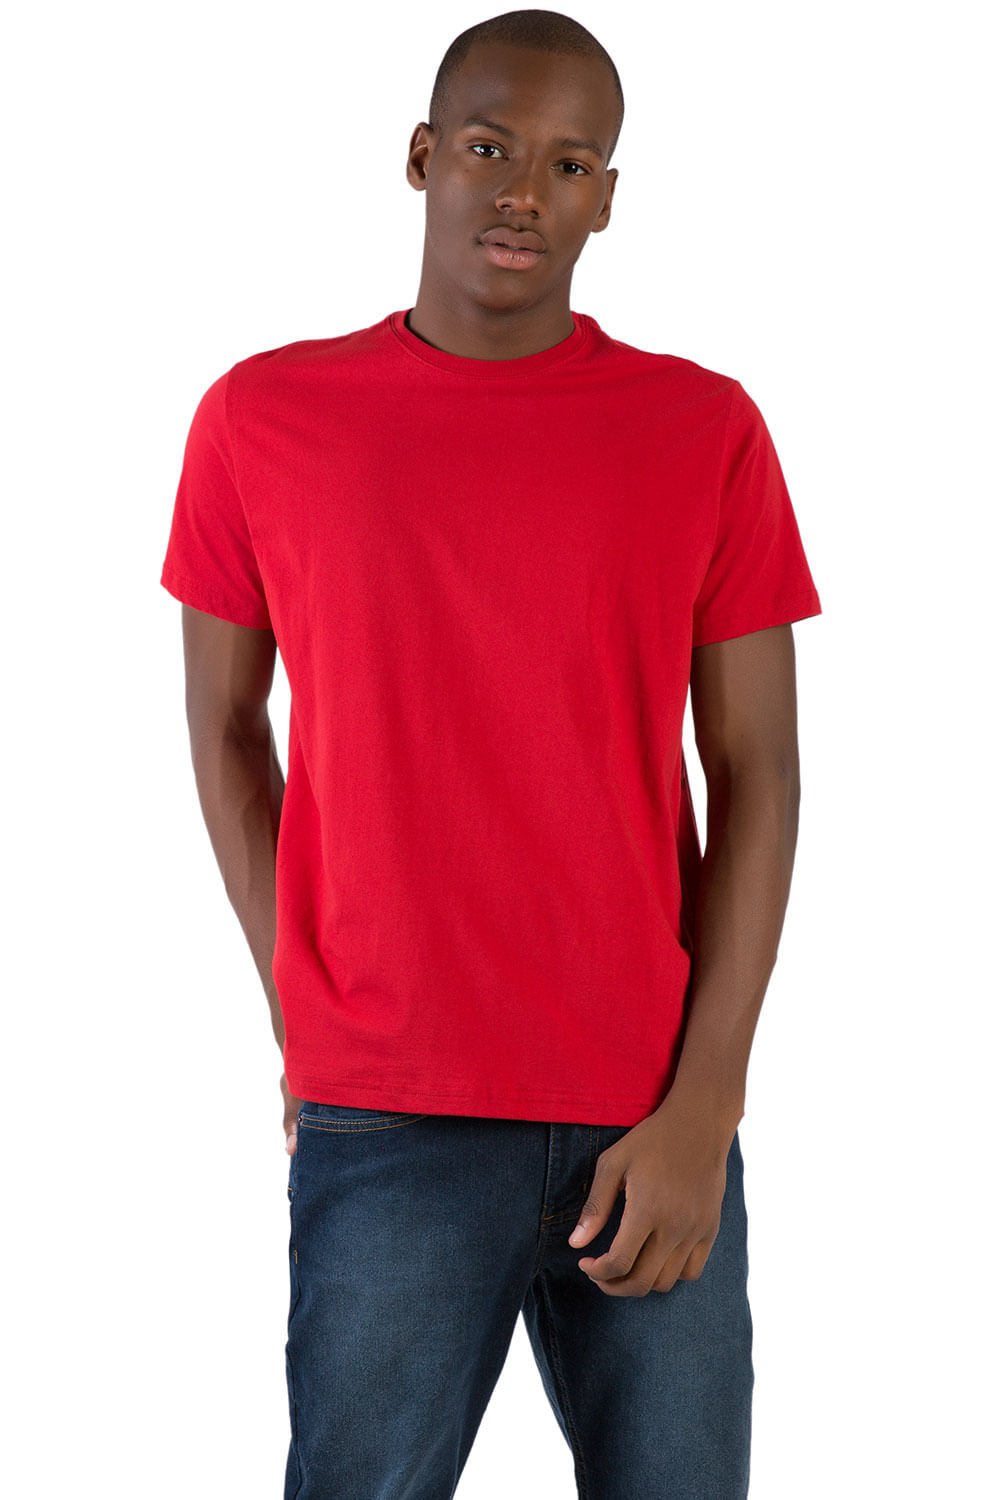 T-Shirt Básica Comfort Vermelho Escuro